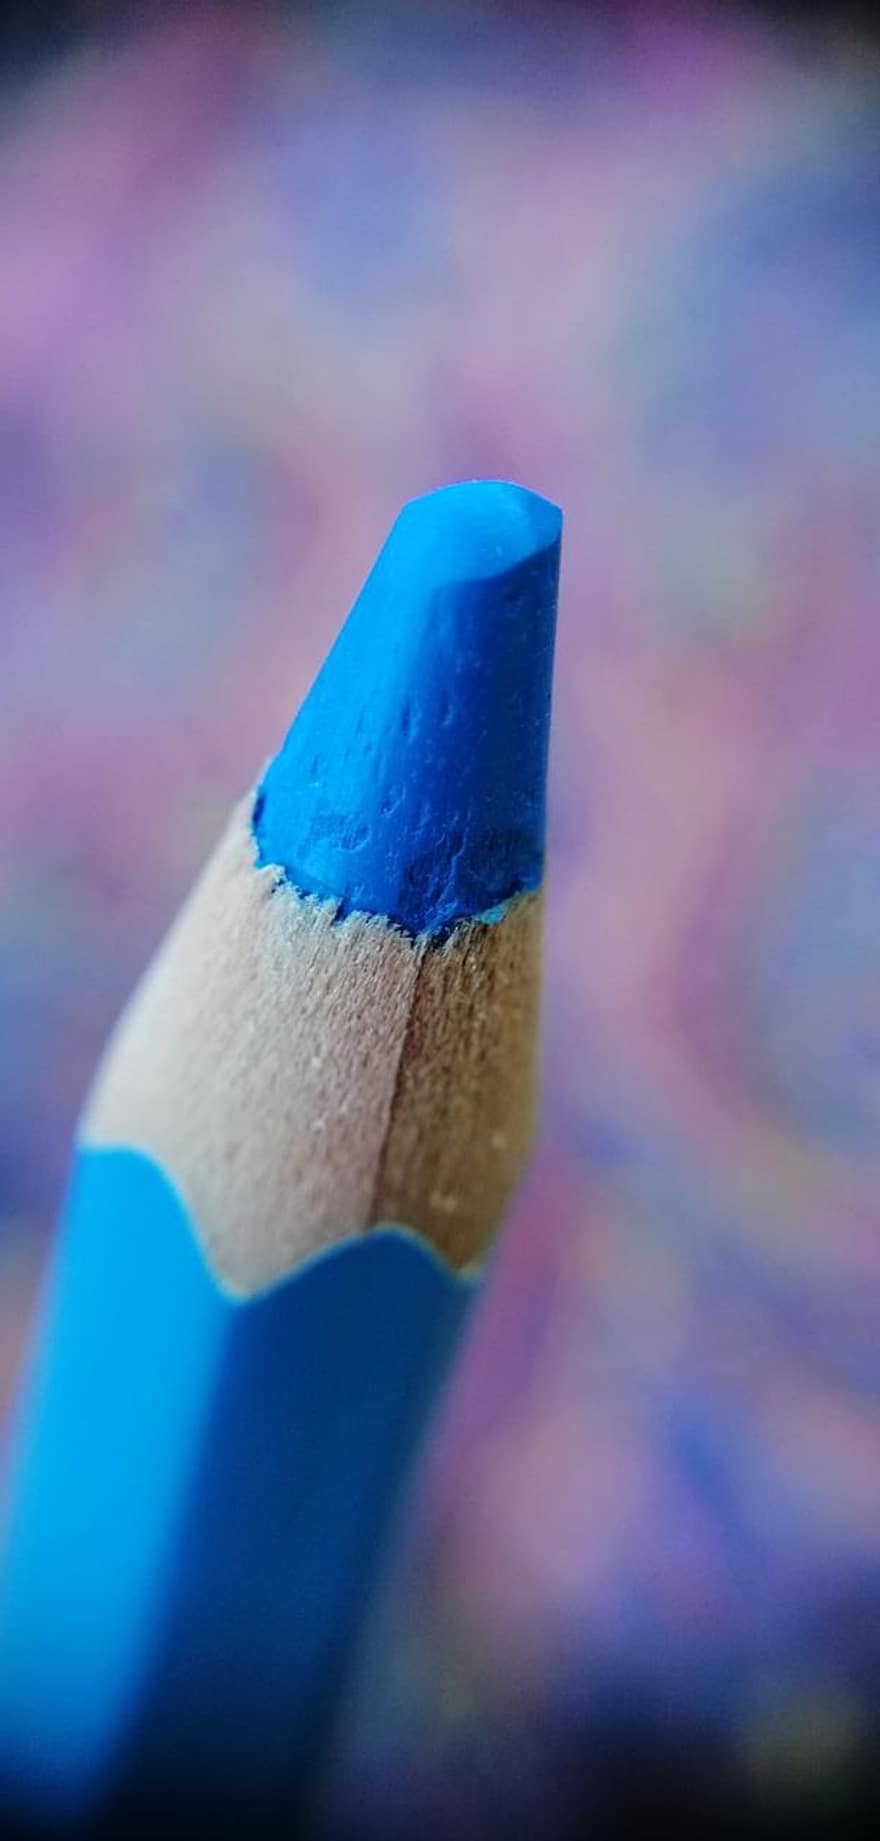 قلم ملون ، قلم أزرق ، قلم رصاص أزرق اللون ، أزرق ، الفنون والحرف اليدوية ، لوازم فنية ، مواد التلوين ، تلوين ، تصوير الماكرو ، خوخه